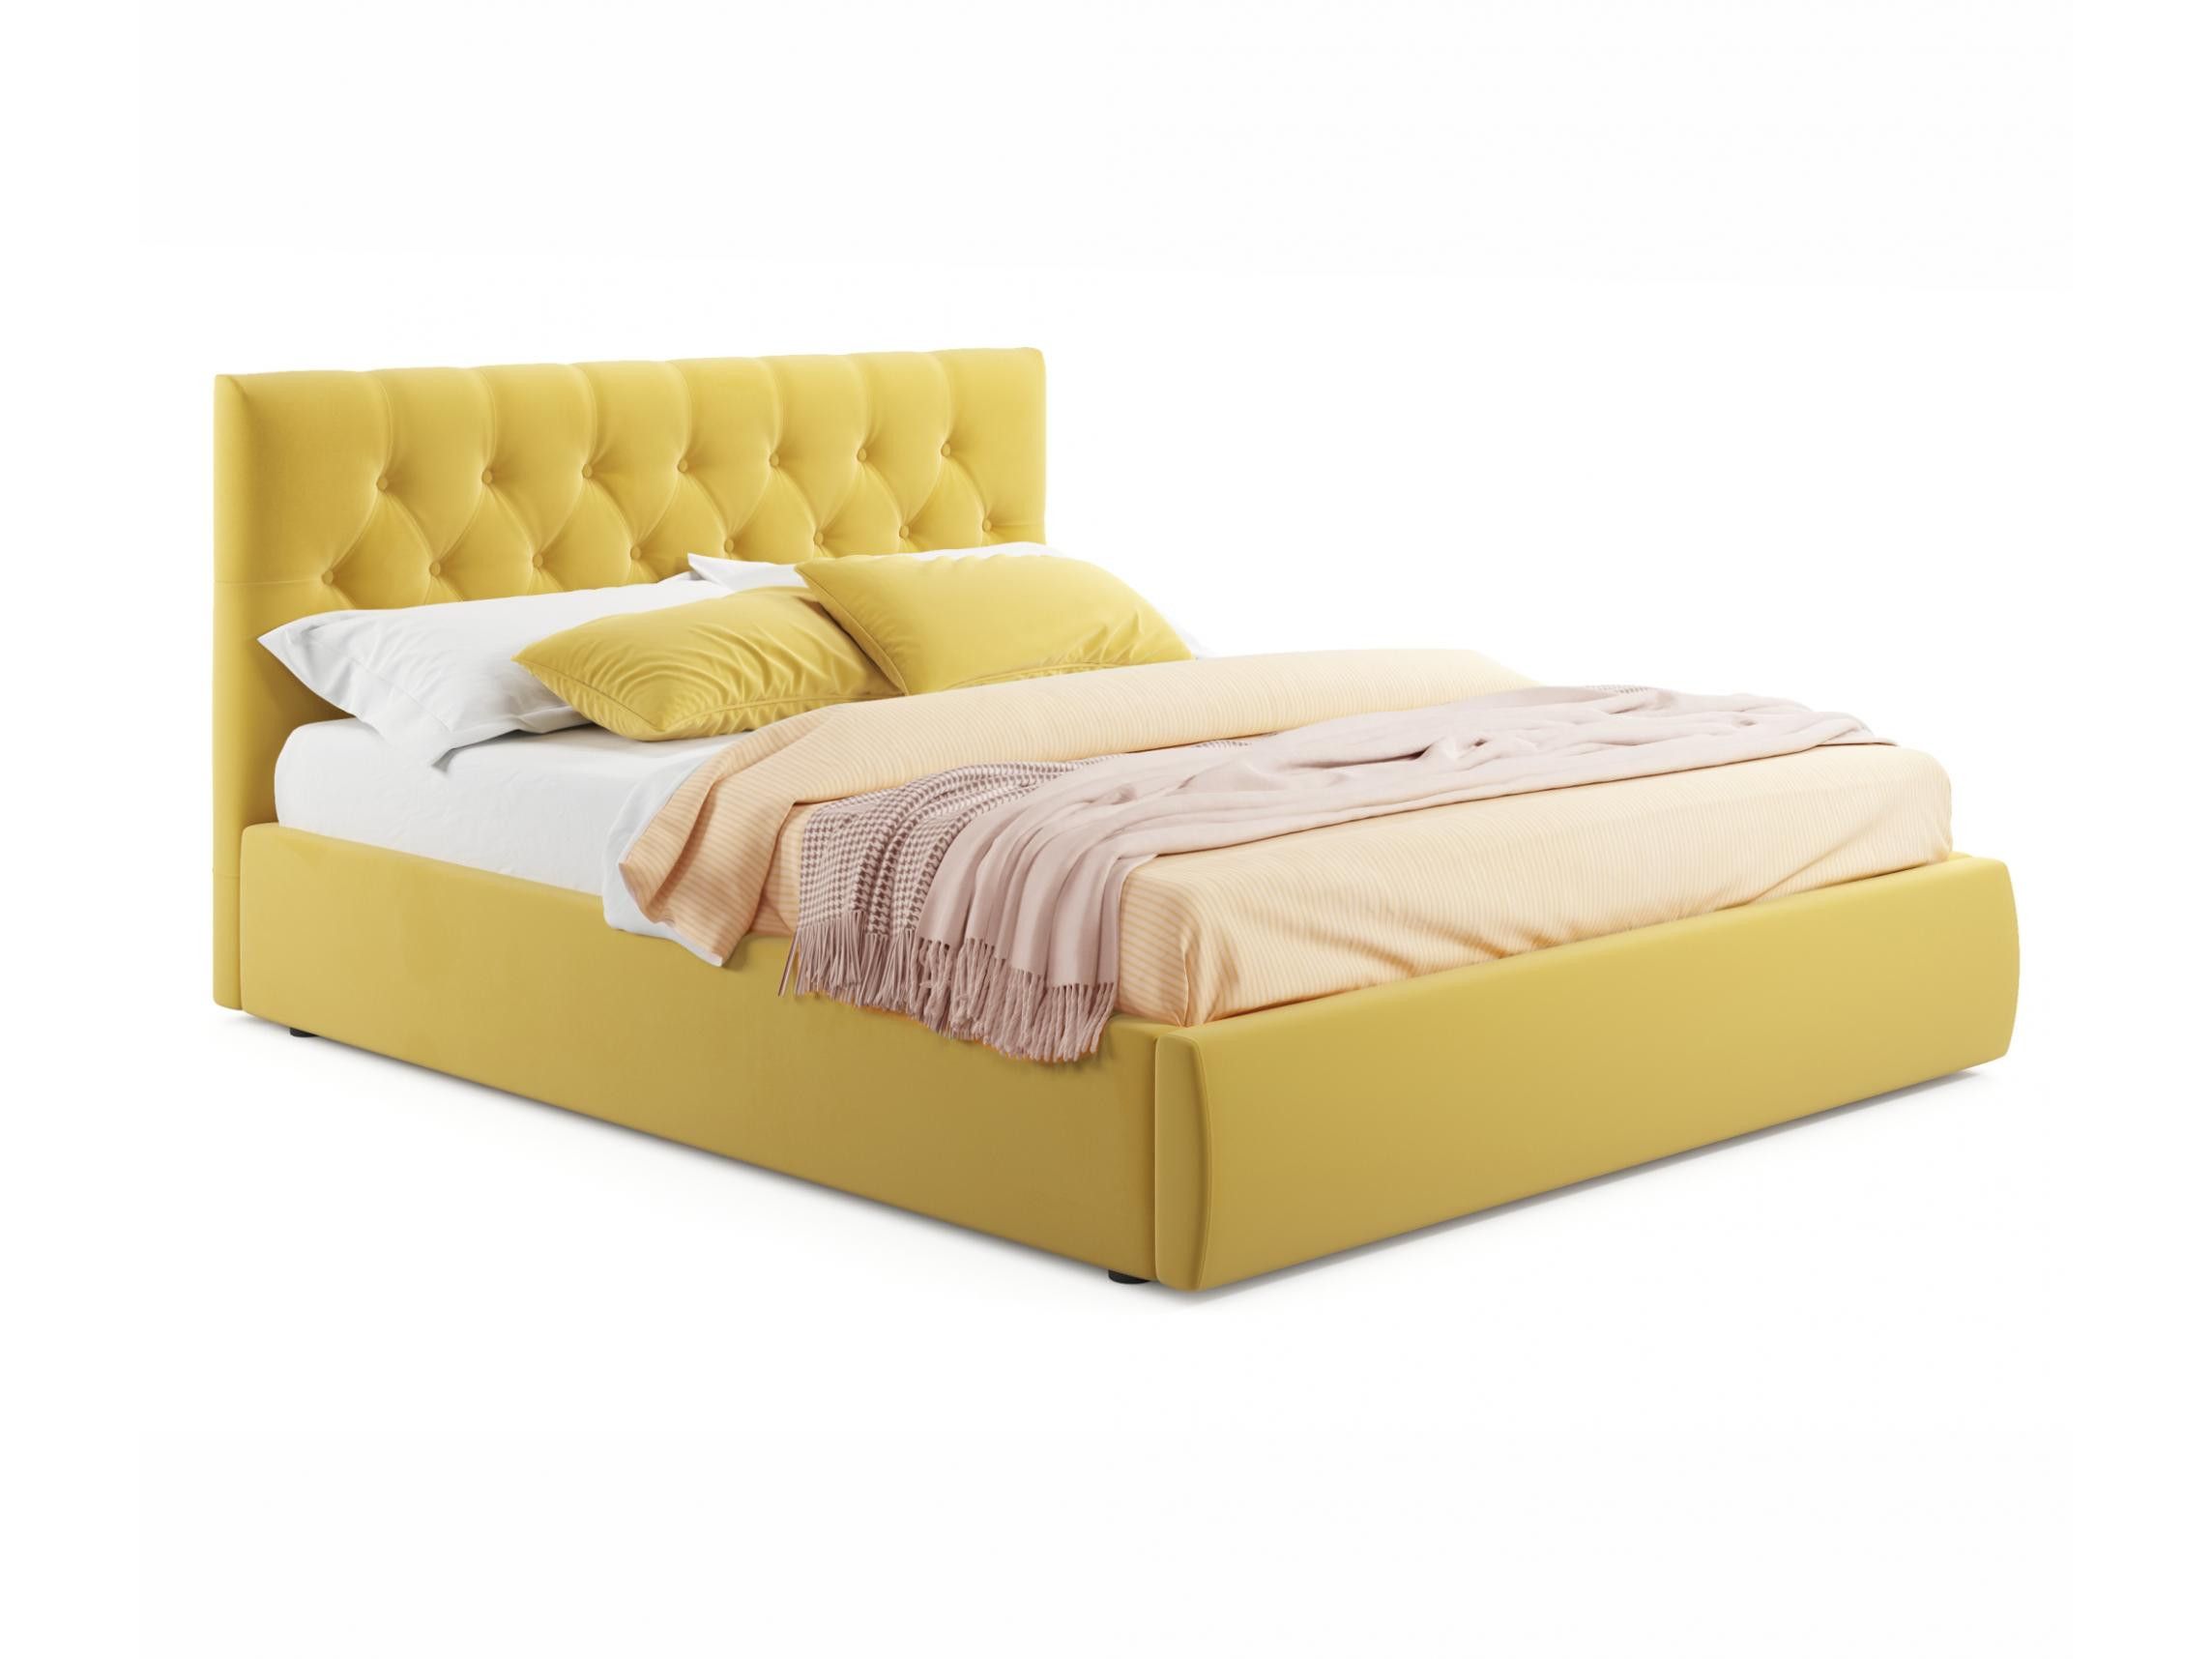 Мягкая кровать Verona 1400 желтая с ортопедическим основанием желтый, Желтый, Велюр, ДСП мягкая кровать ameli 1400 желтая с ортопедическим основанием желтый желтый велюр дсп